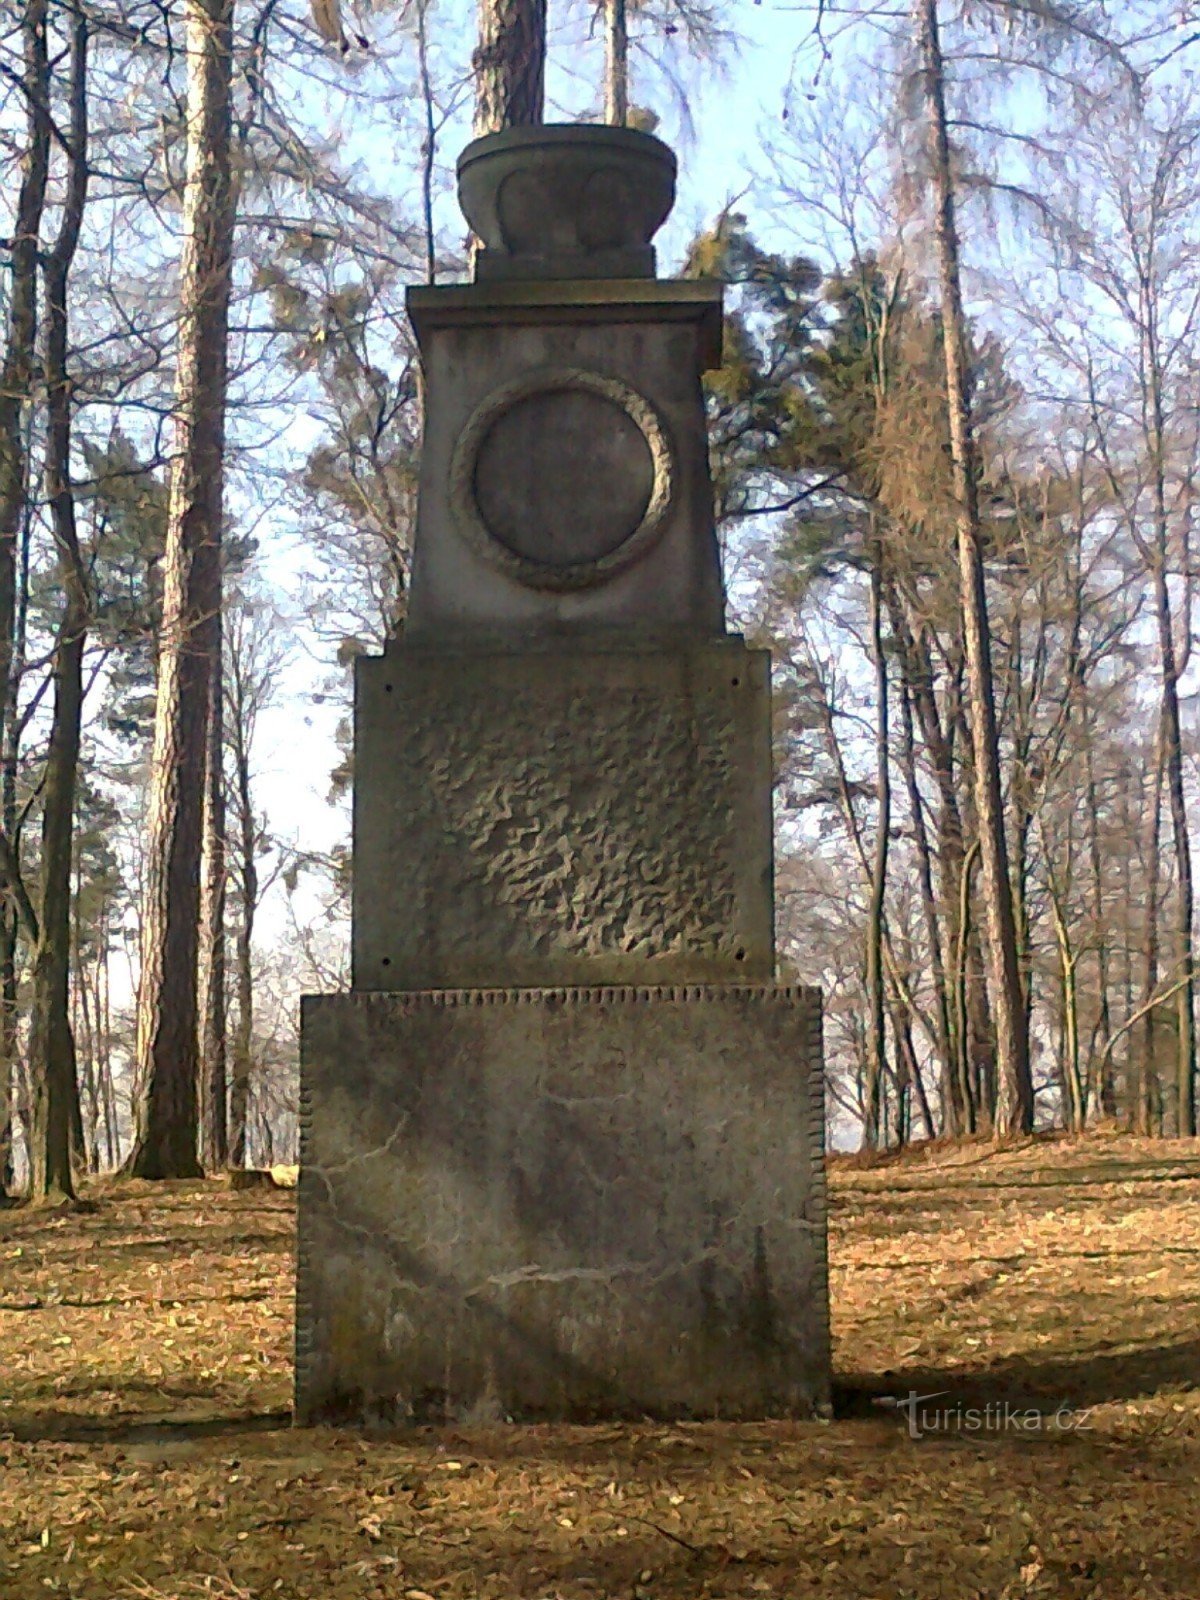 Monumentul celor care au murit în Primul Război Mondial, construit pe așa-numita Křížová hora